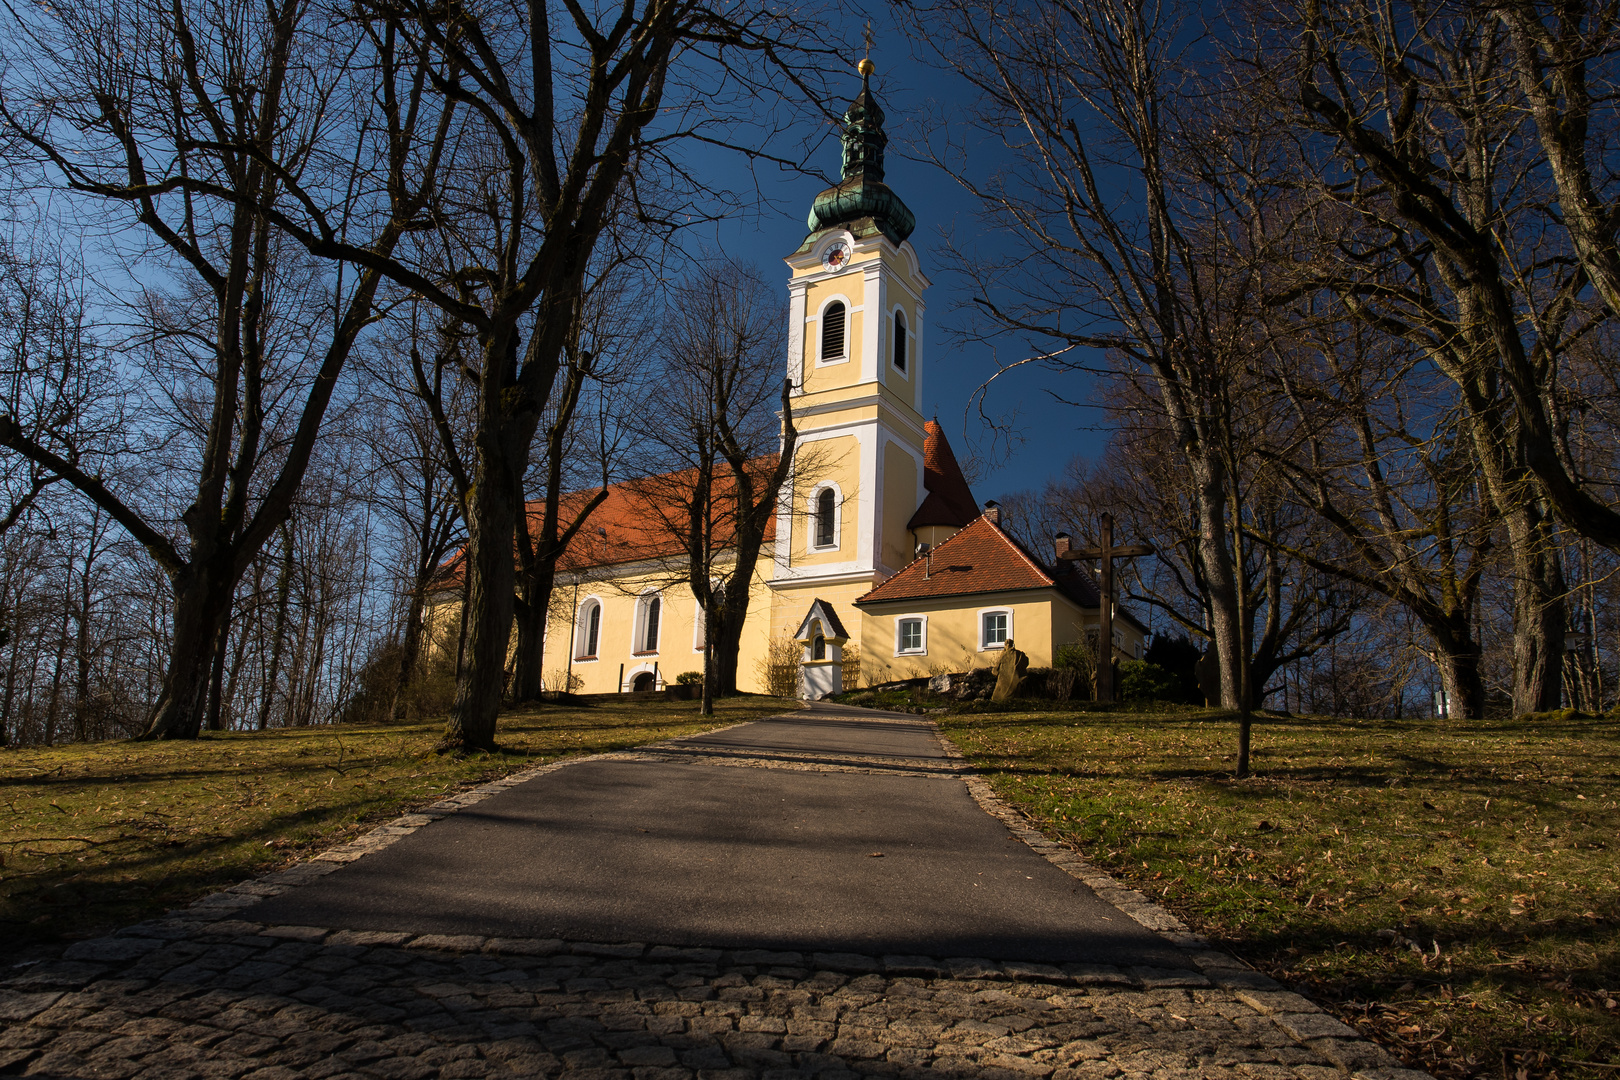 Annabergkirche